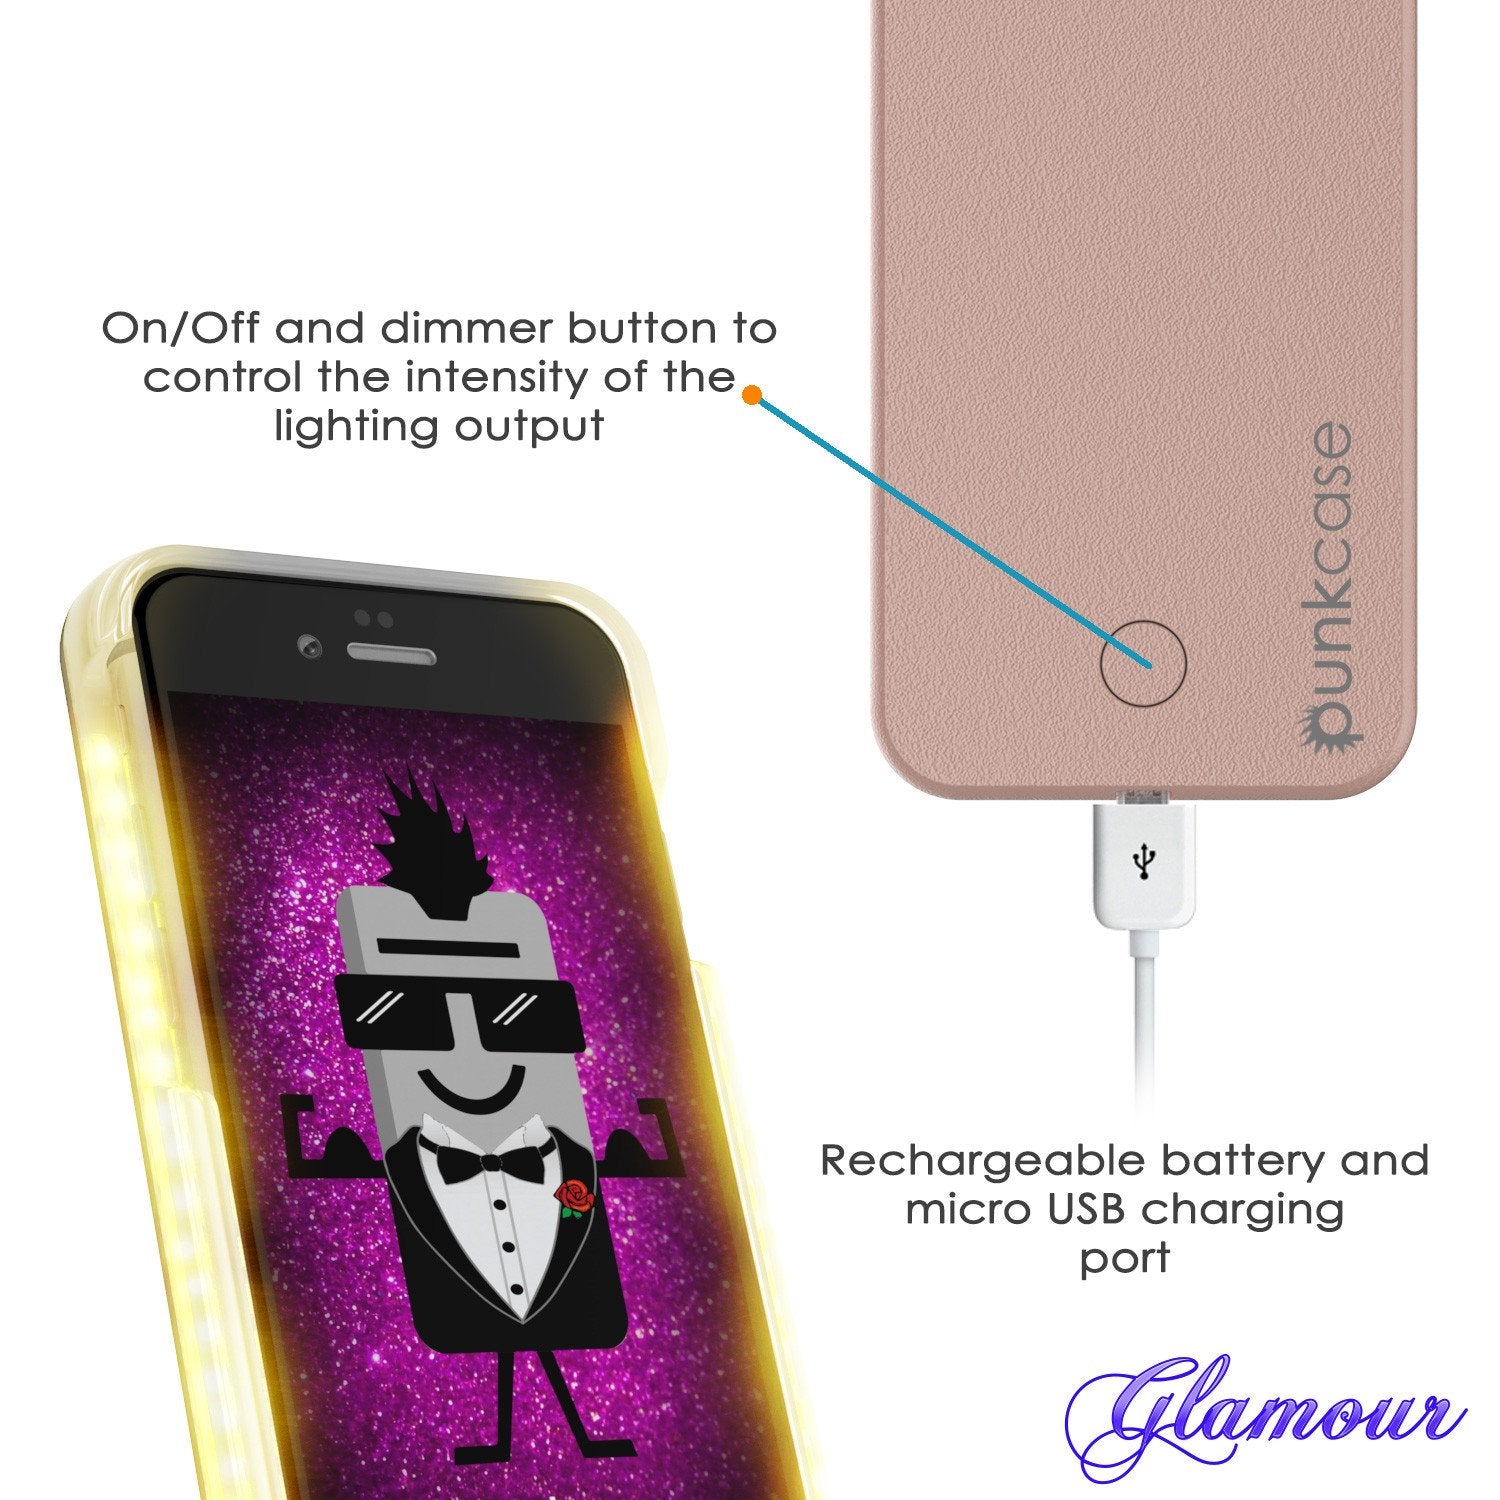 iPhone 6+/6S+ Plus Punkcase LED Light Case Light Illuminated Case, ROSE GOLD  W/  Battery Power Bank - PunkCase NZ